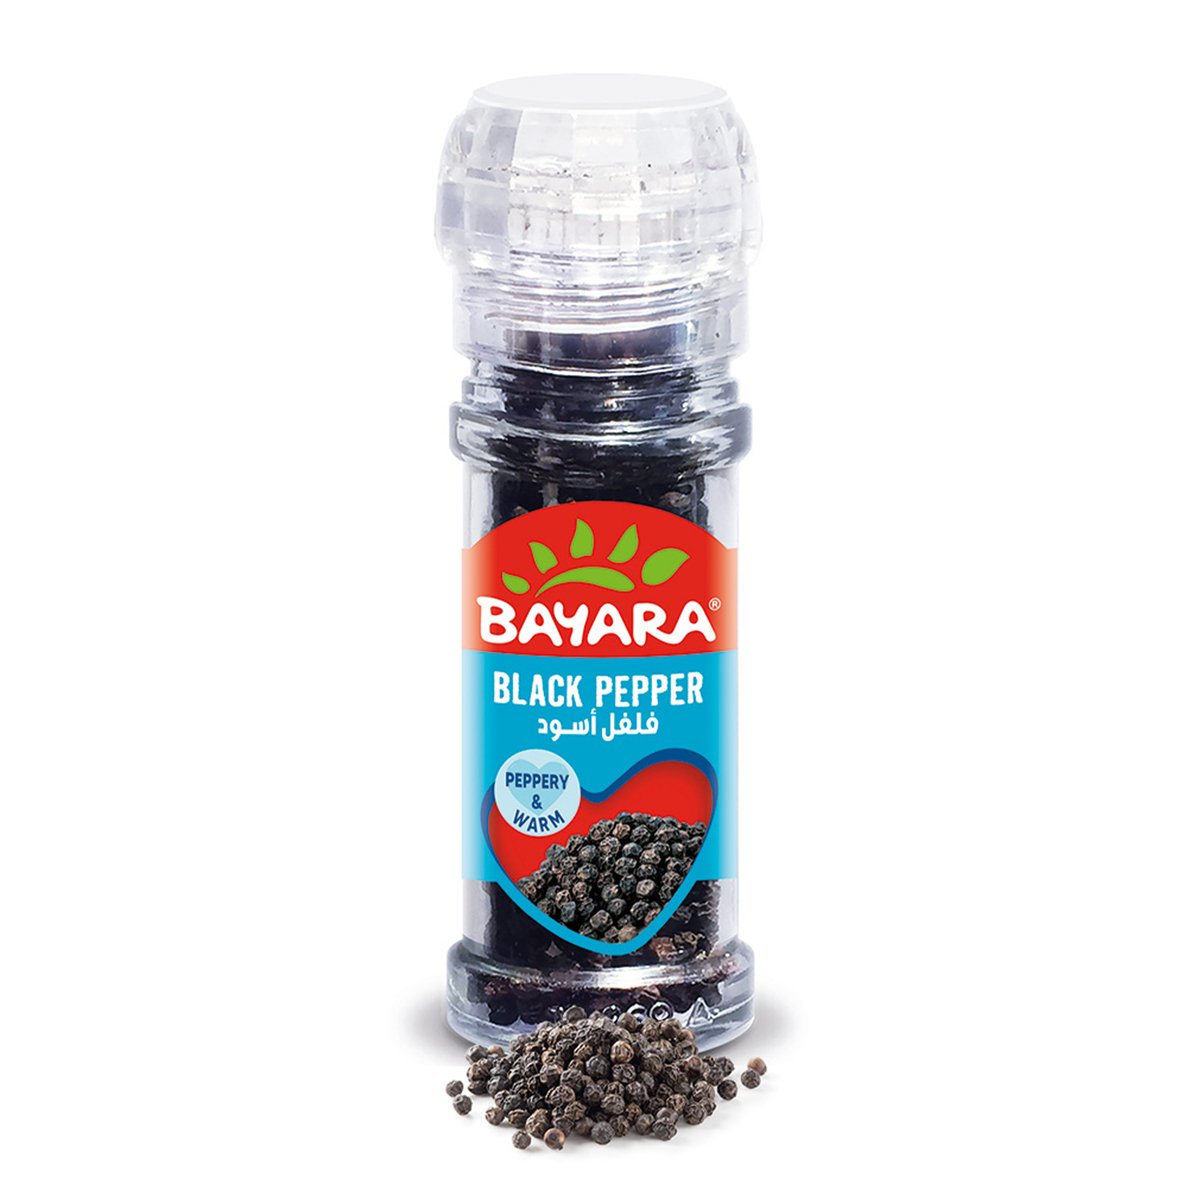 Bayara Black Pepper Whole 40 g